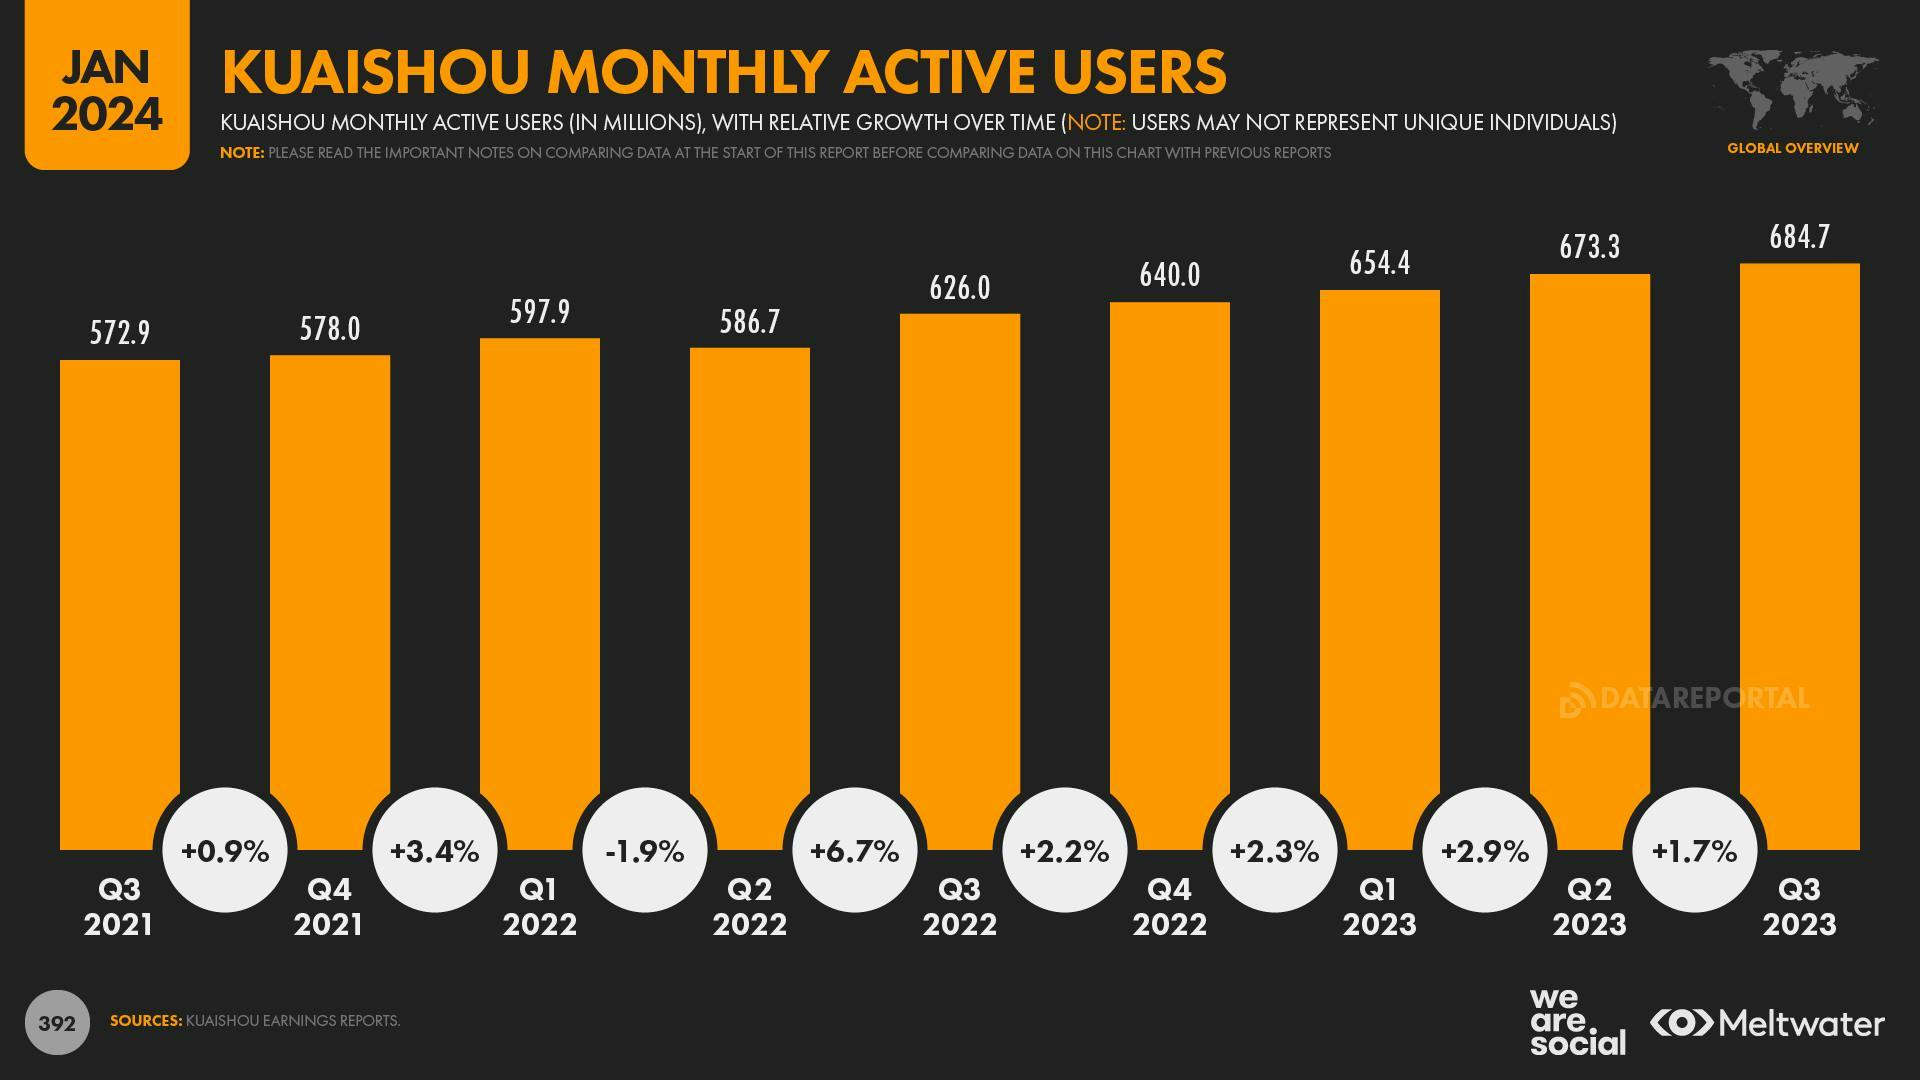 Kuaishou monthly active users